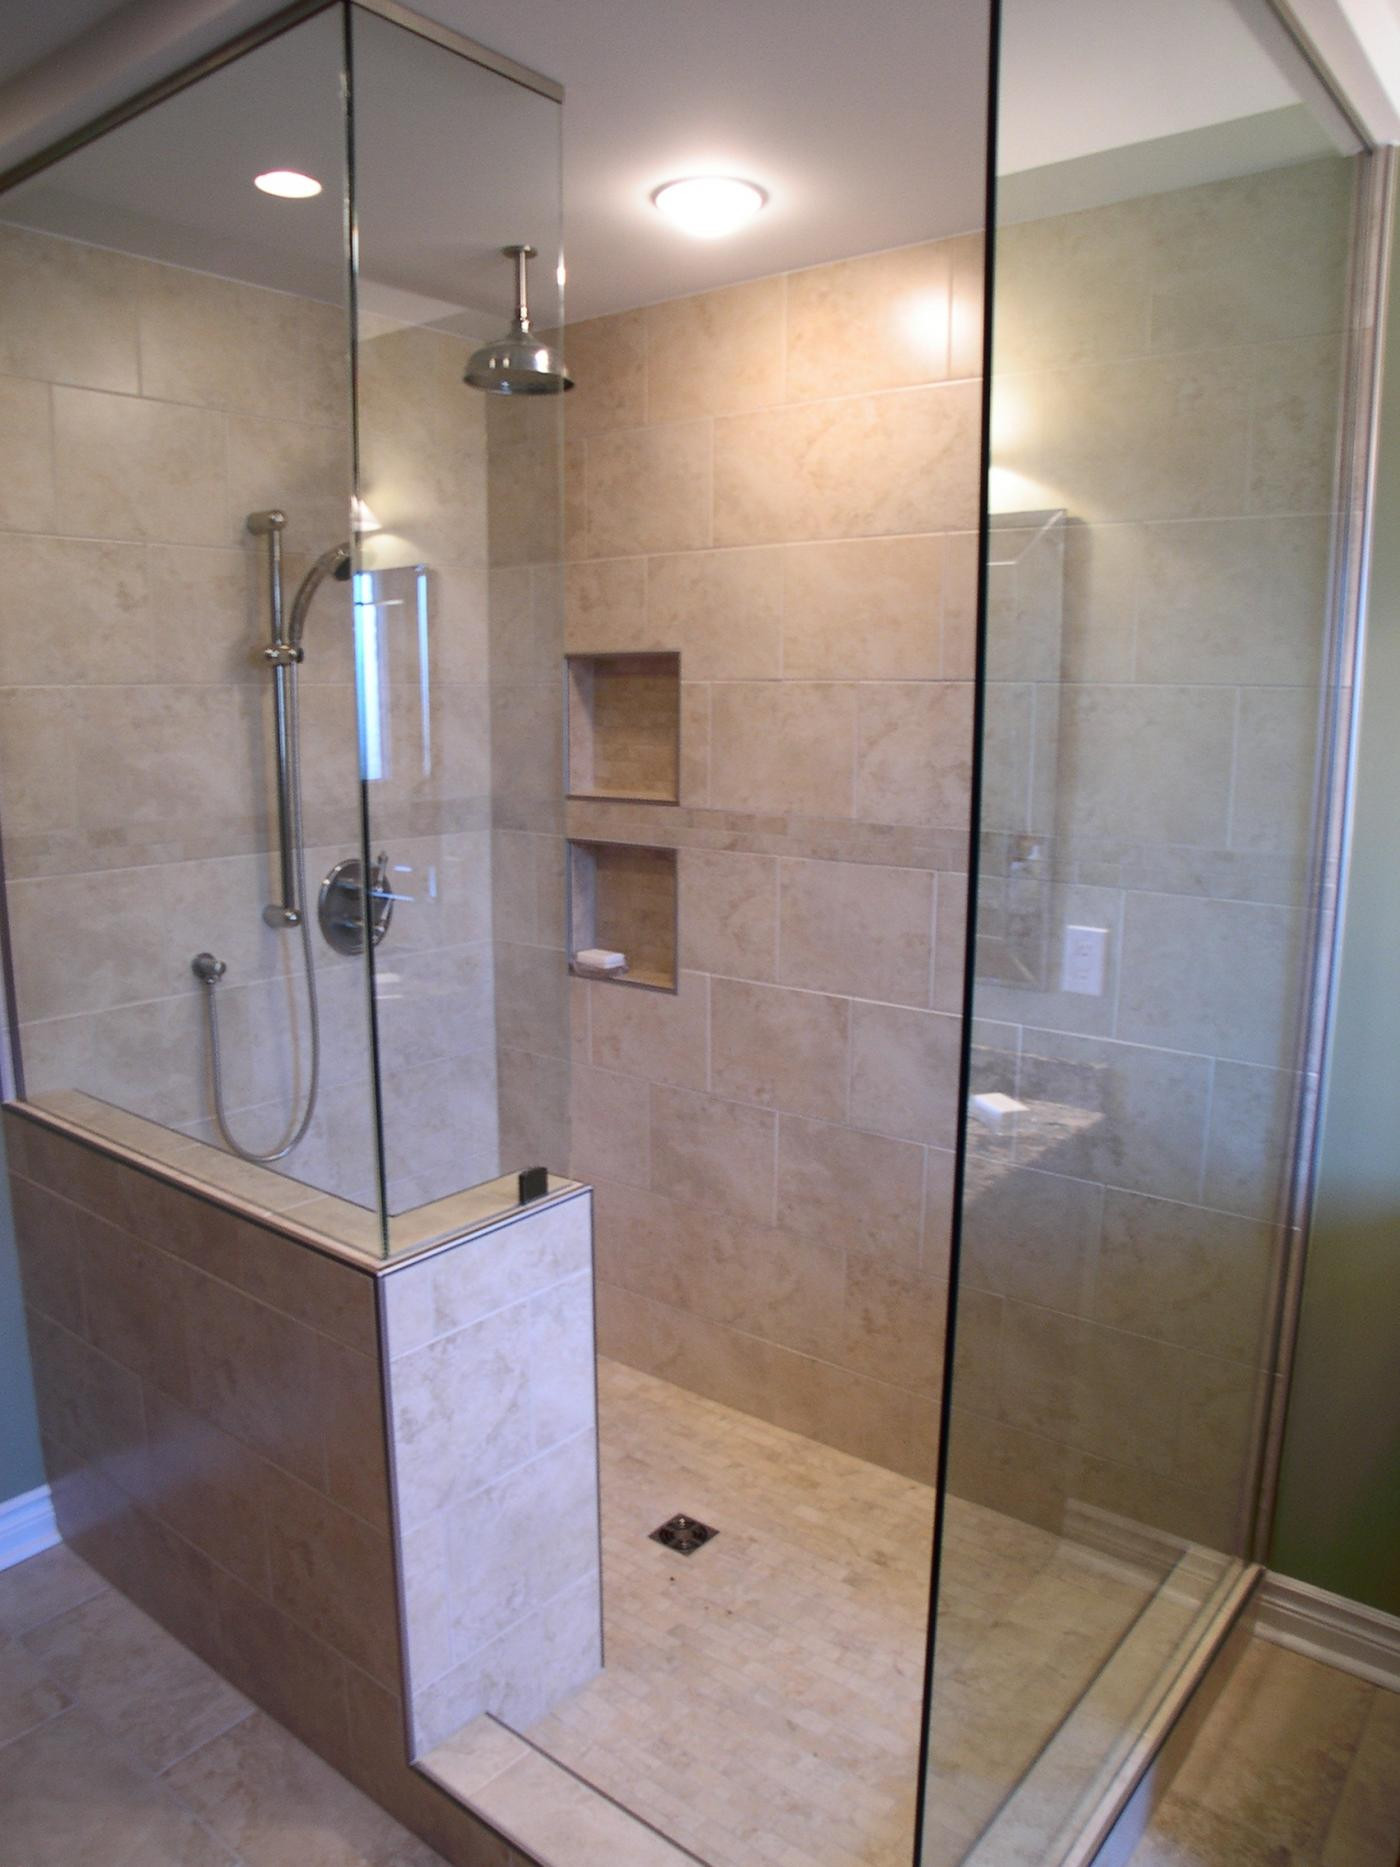 Bathroom Walk In Shower Ideas
 Walk In Shower Ideas Remodeling Contractor Talk